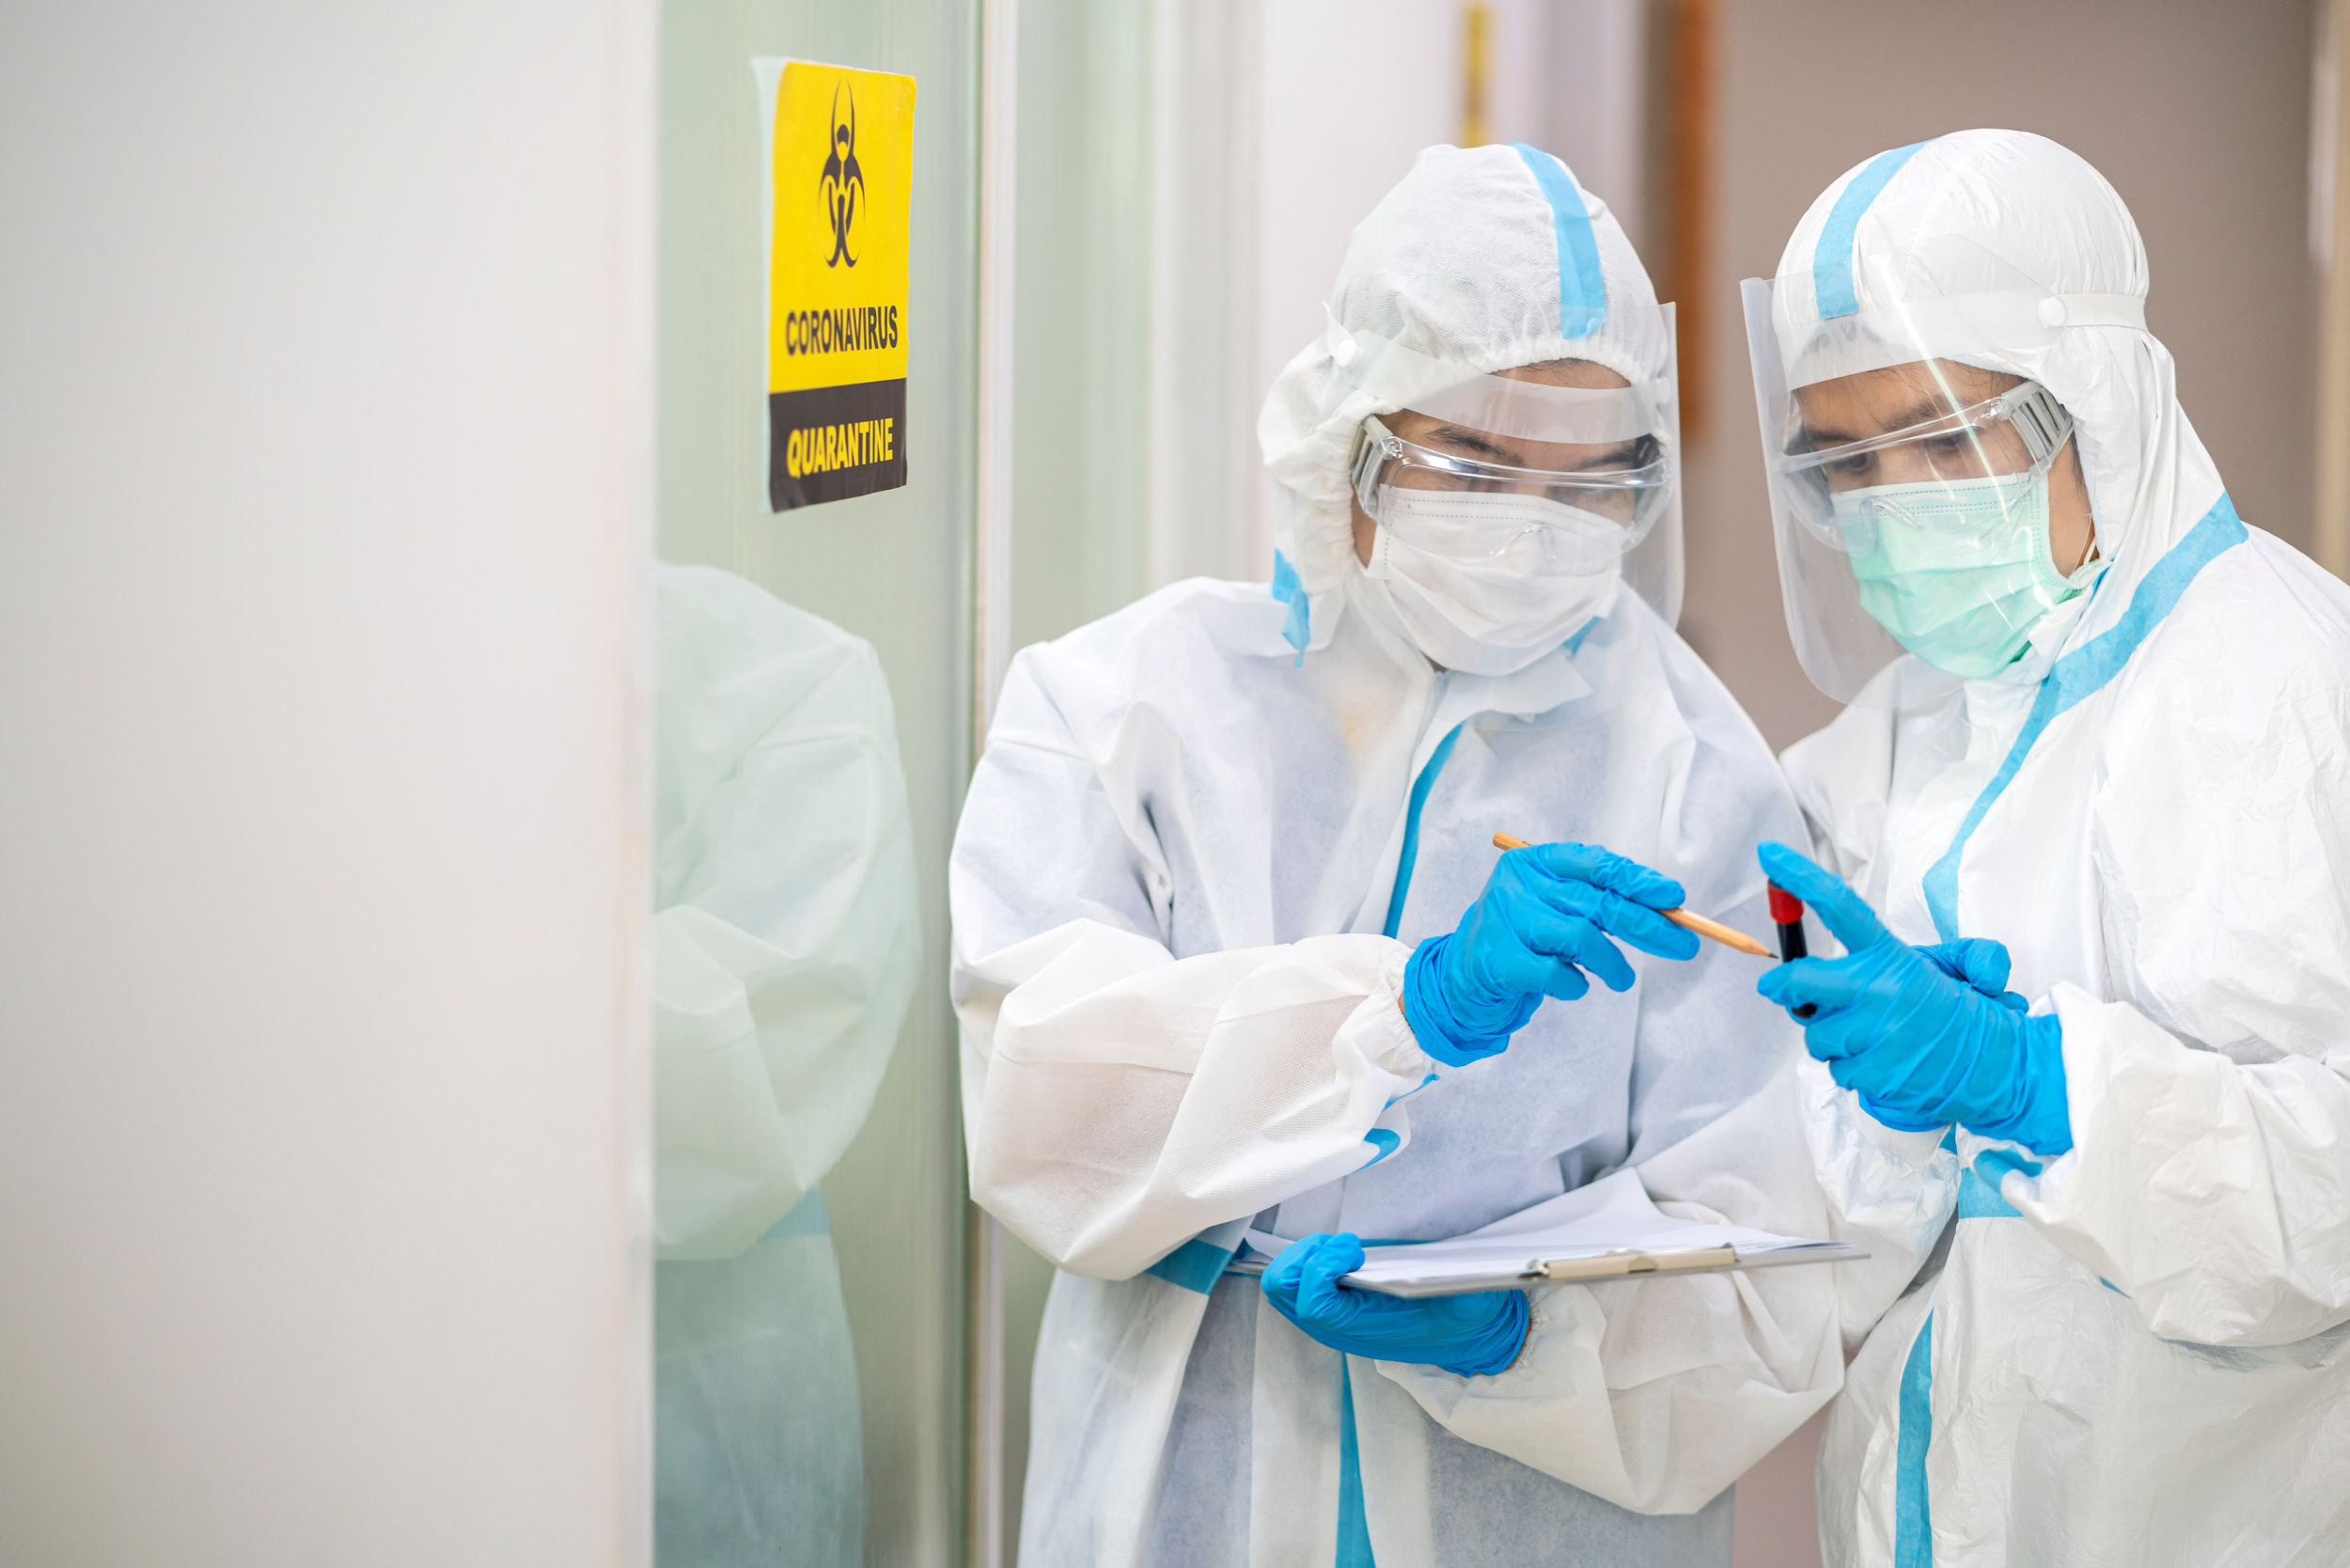 Medycy w odzieży ochronnej, fot. Shutterstock